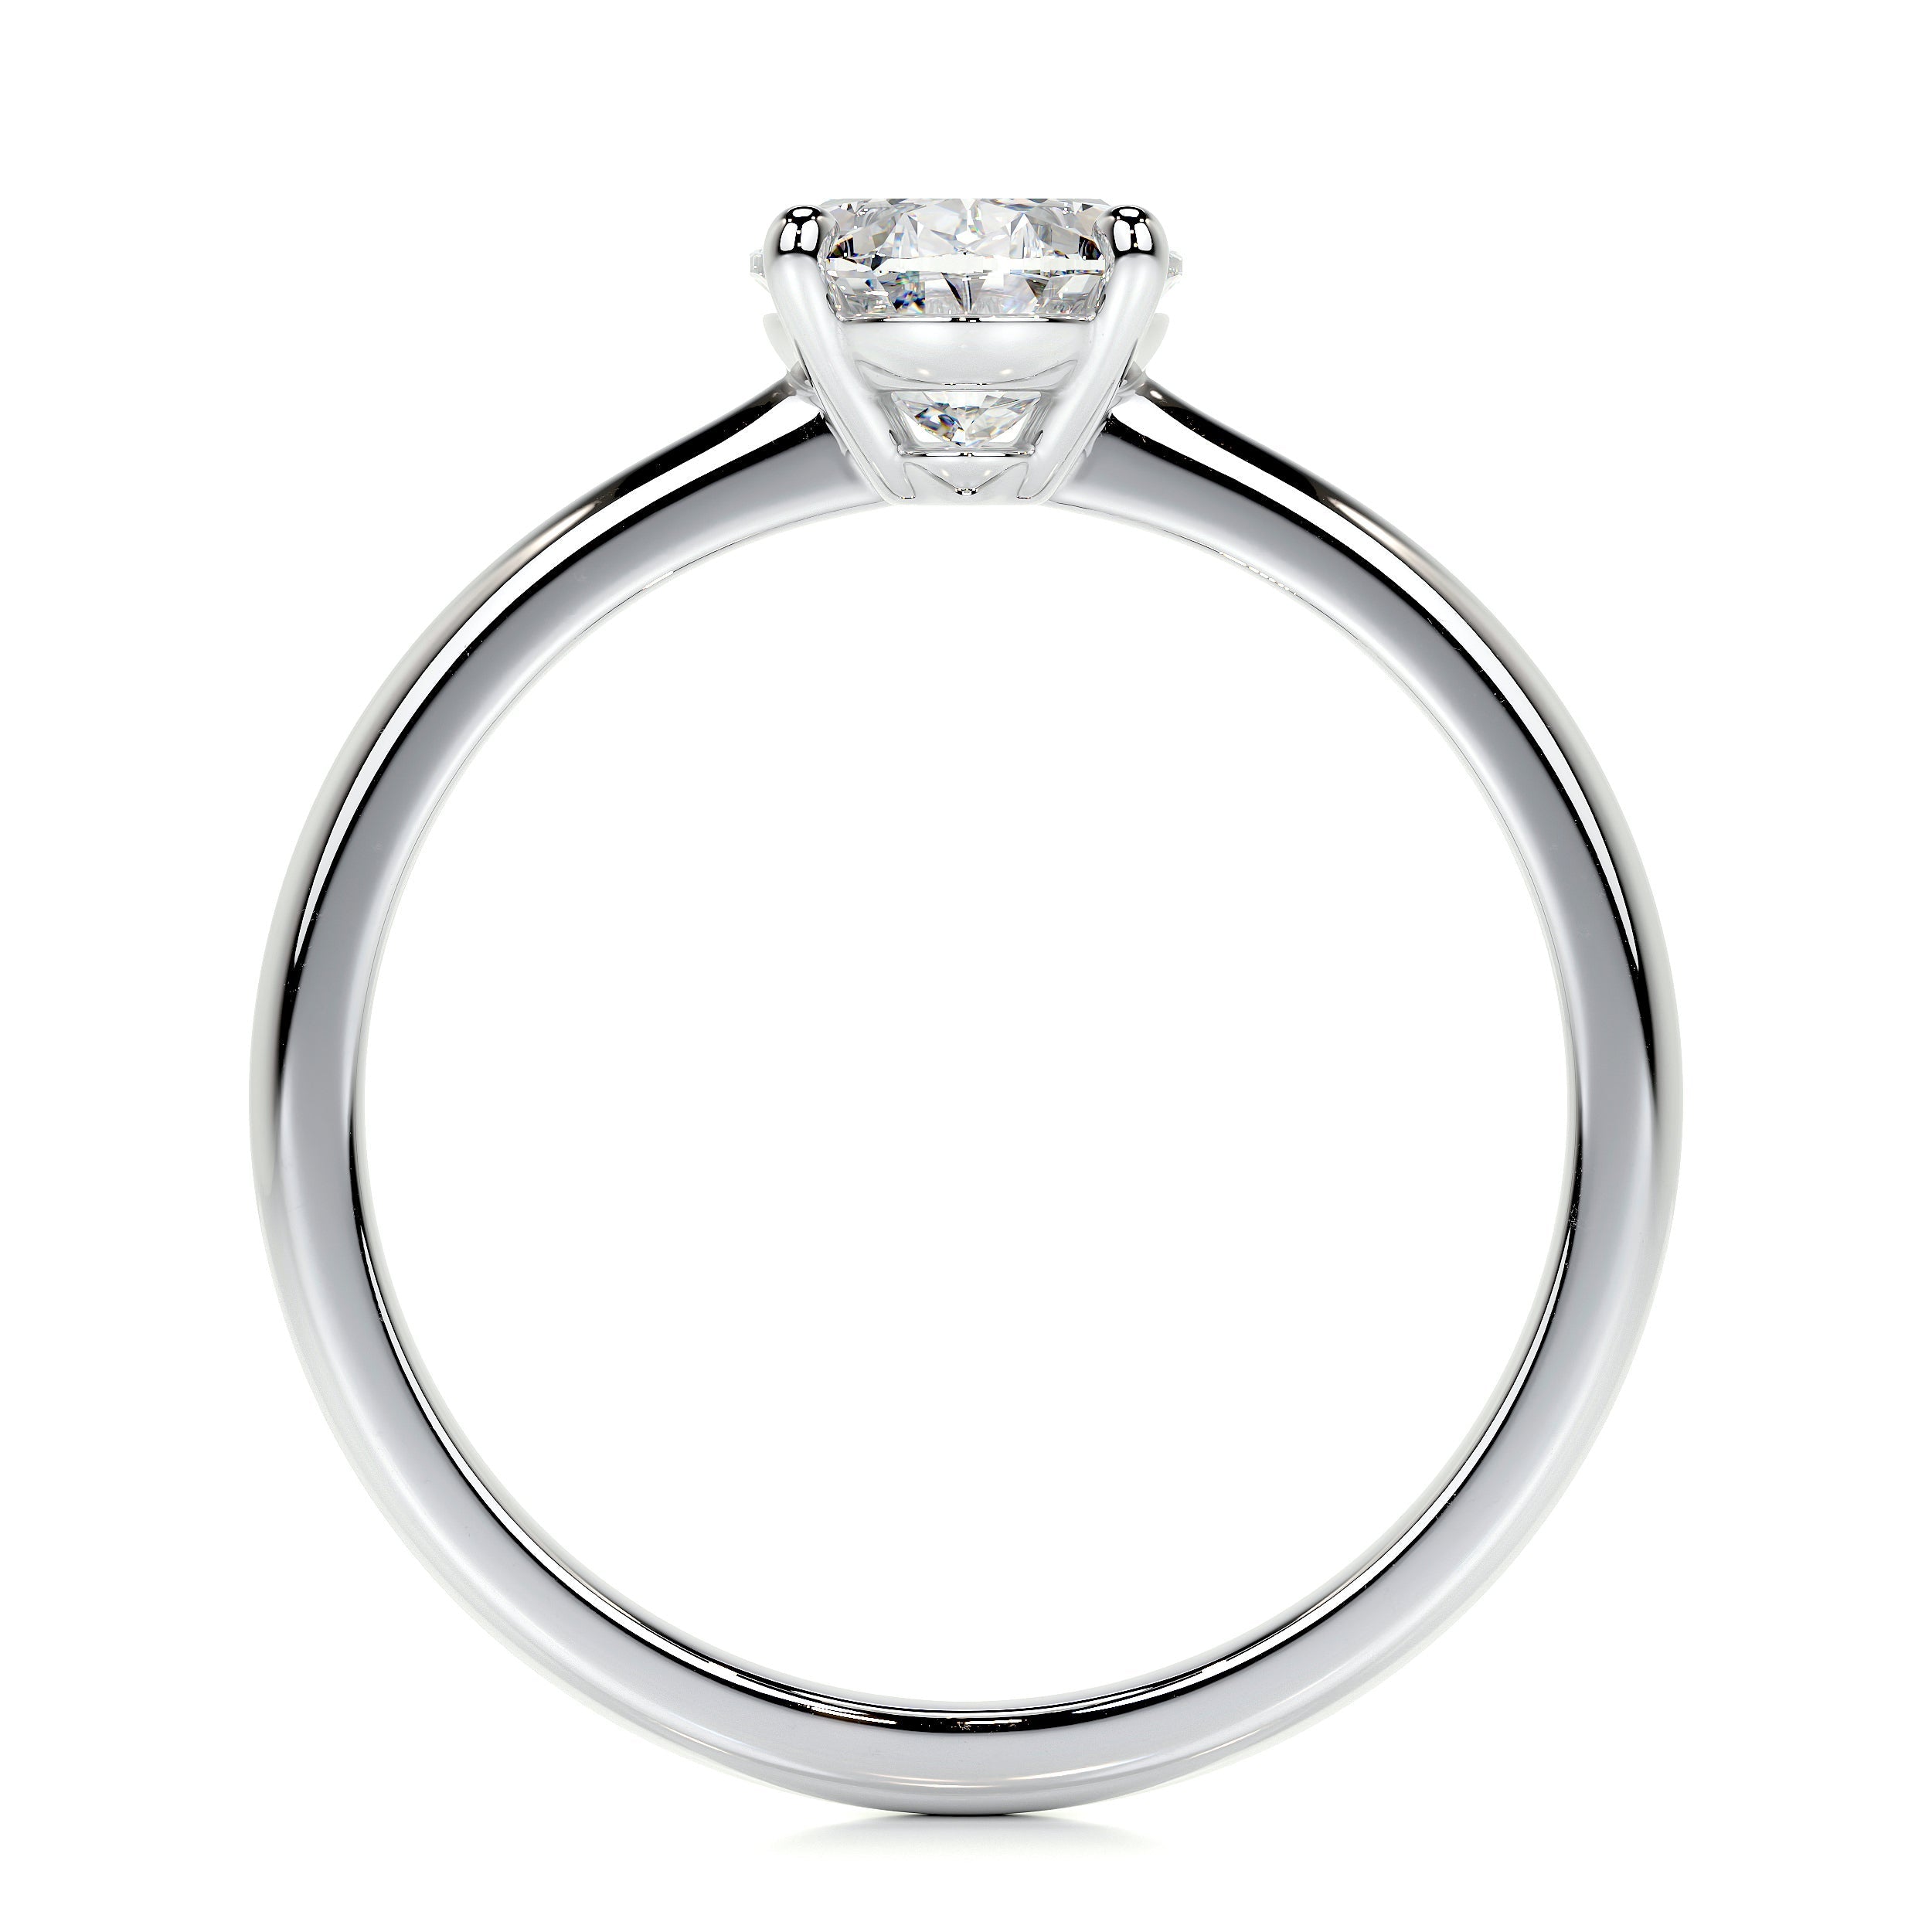 Julia Lab Grown Diamond Ring   (1 Carat) -14K White Gold